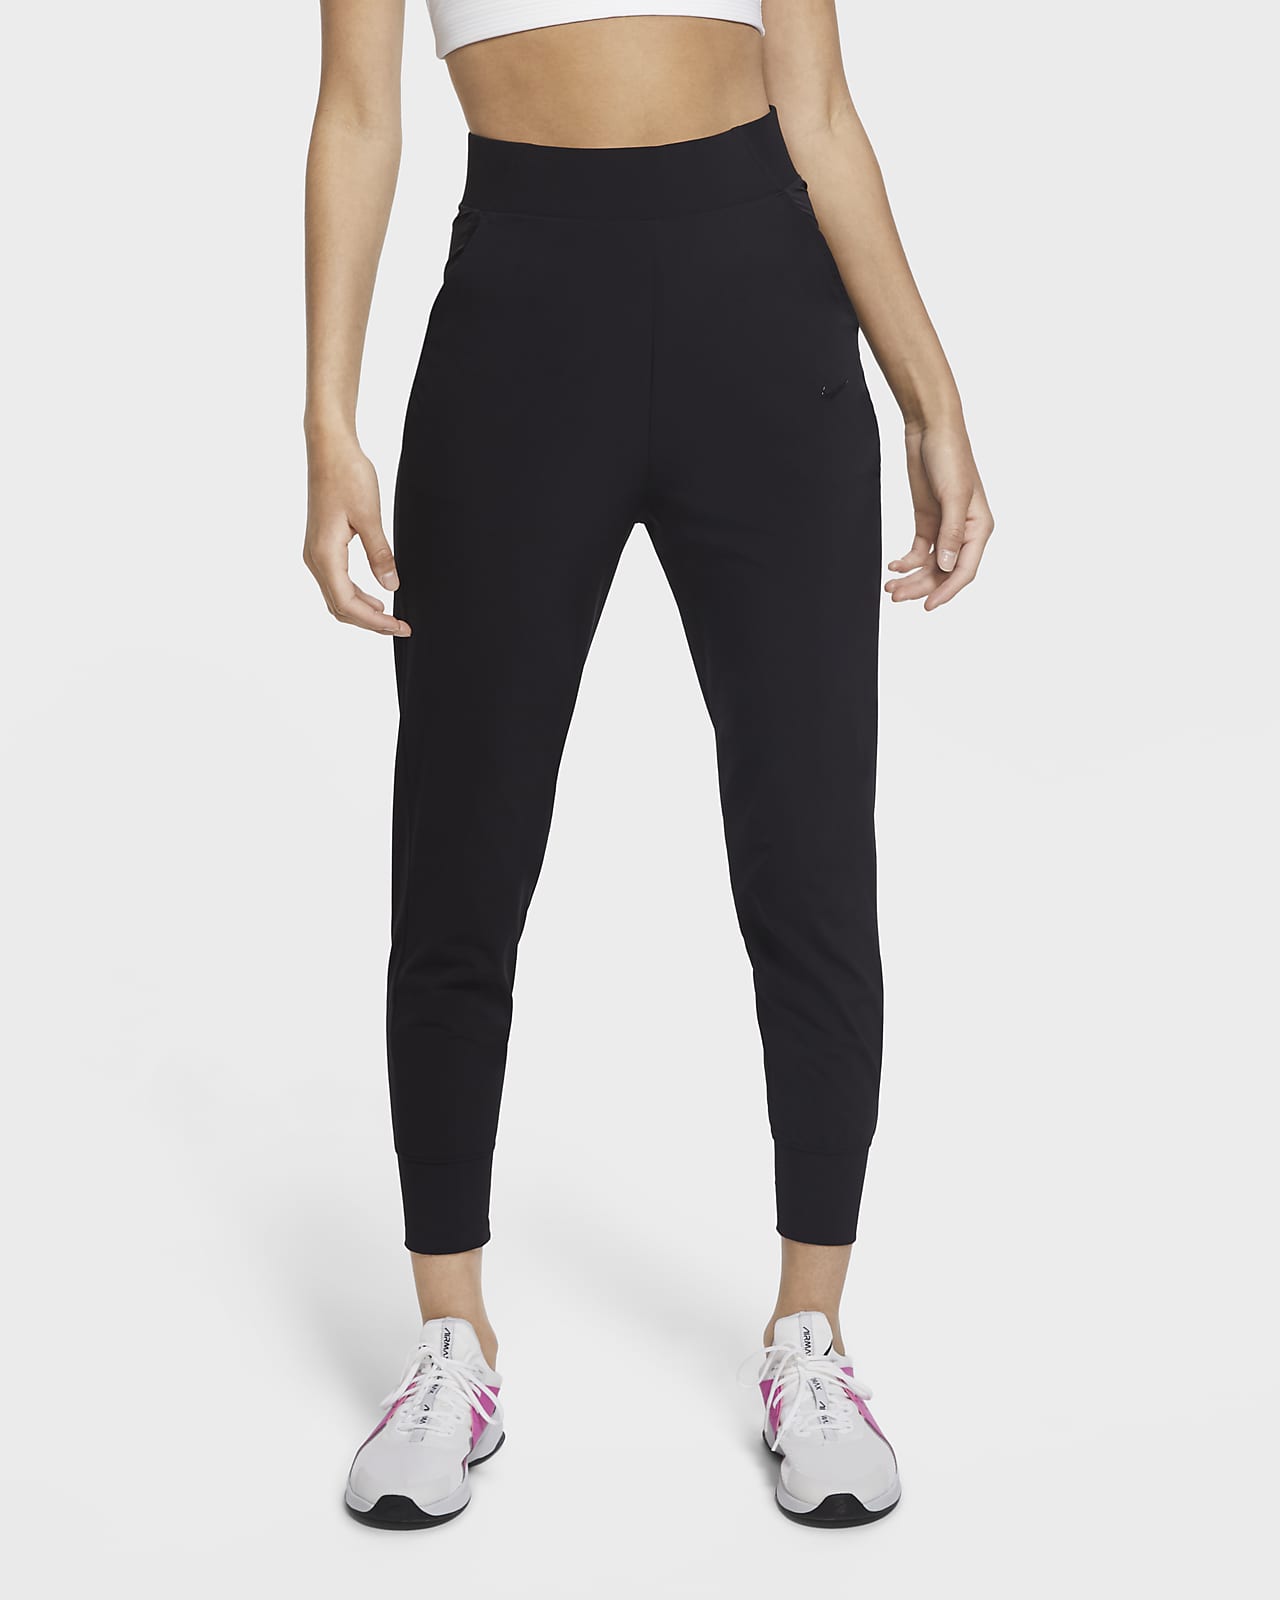 Γυναικείο παντελόνι προπόνησης Nike Bliss Luxe